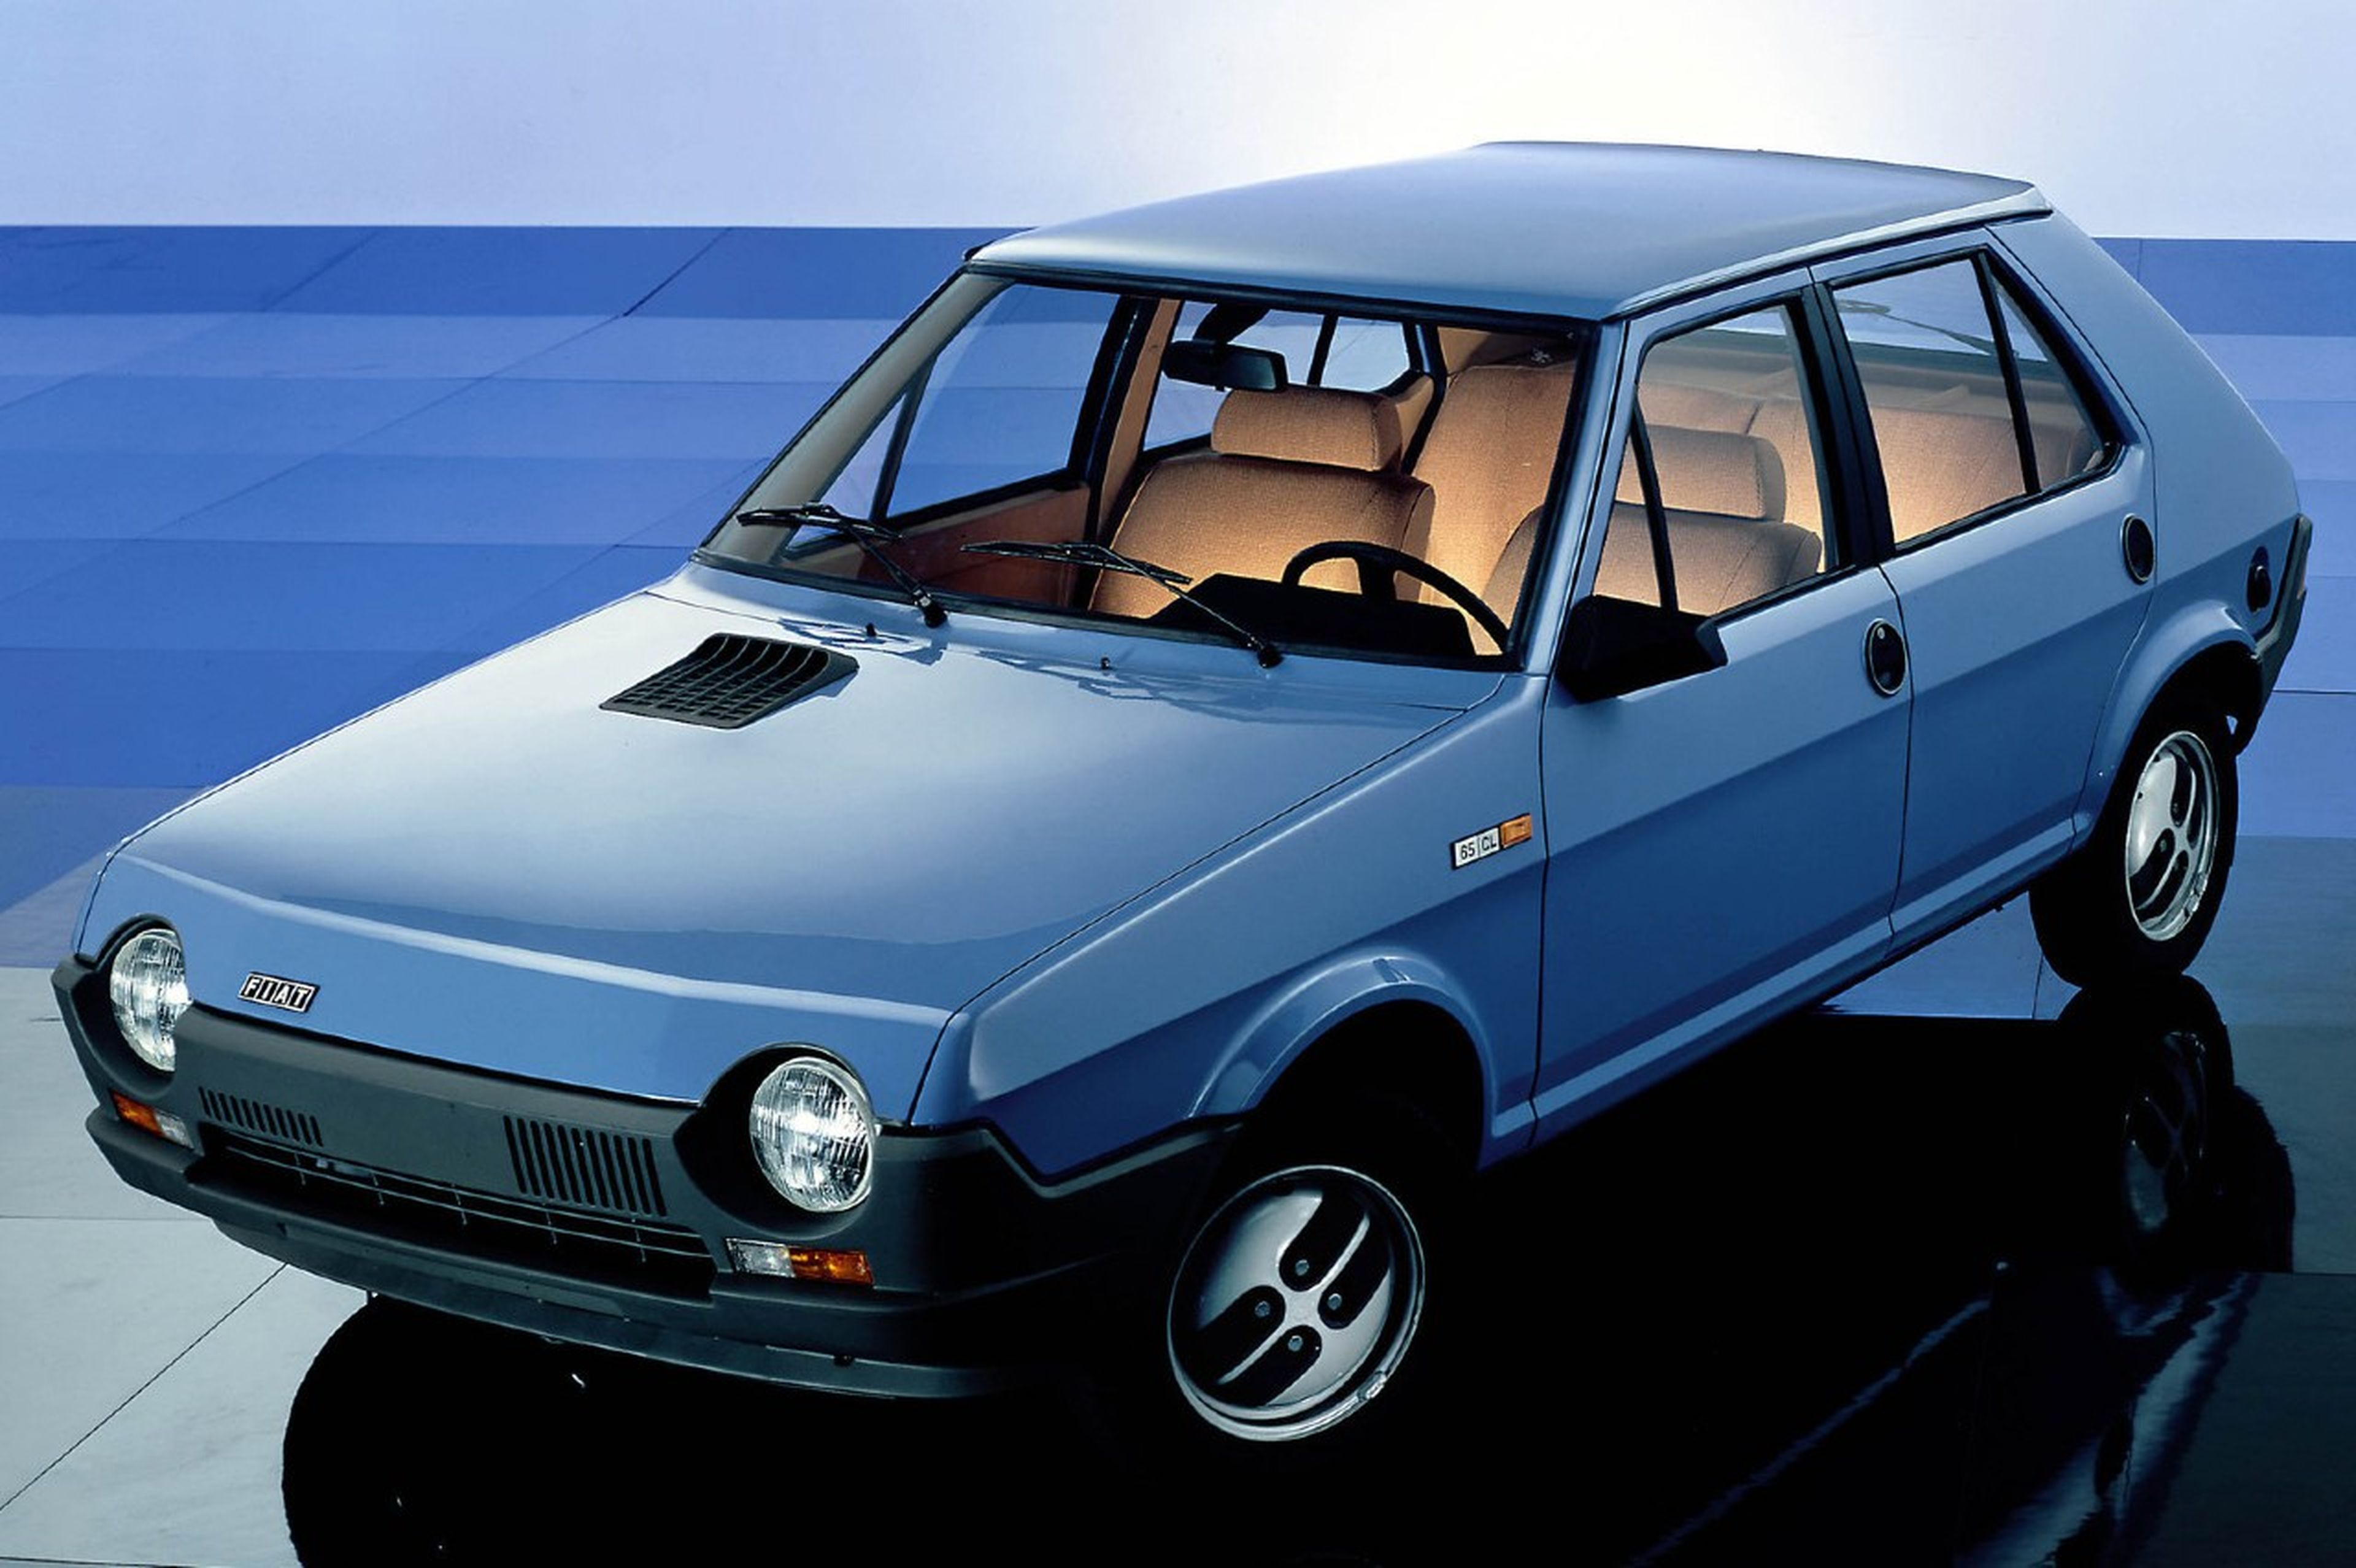 El Fiat Ritmo salió al mercado en 1978, diseñado por Giugiaro